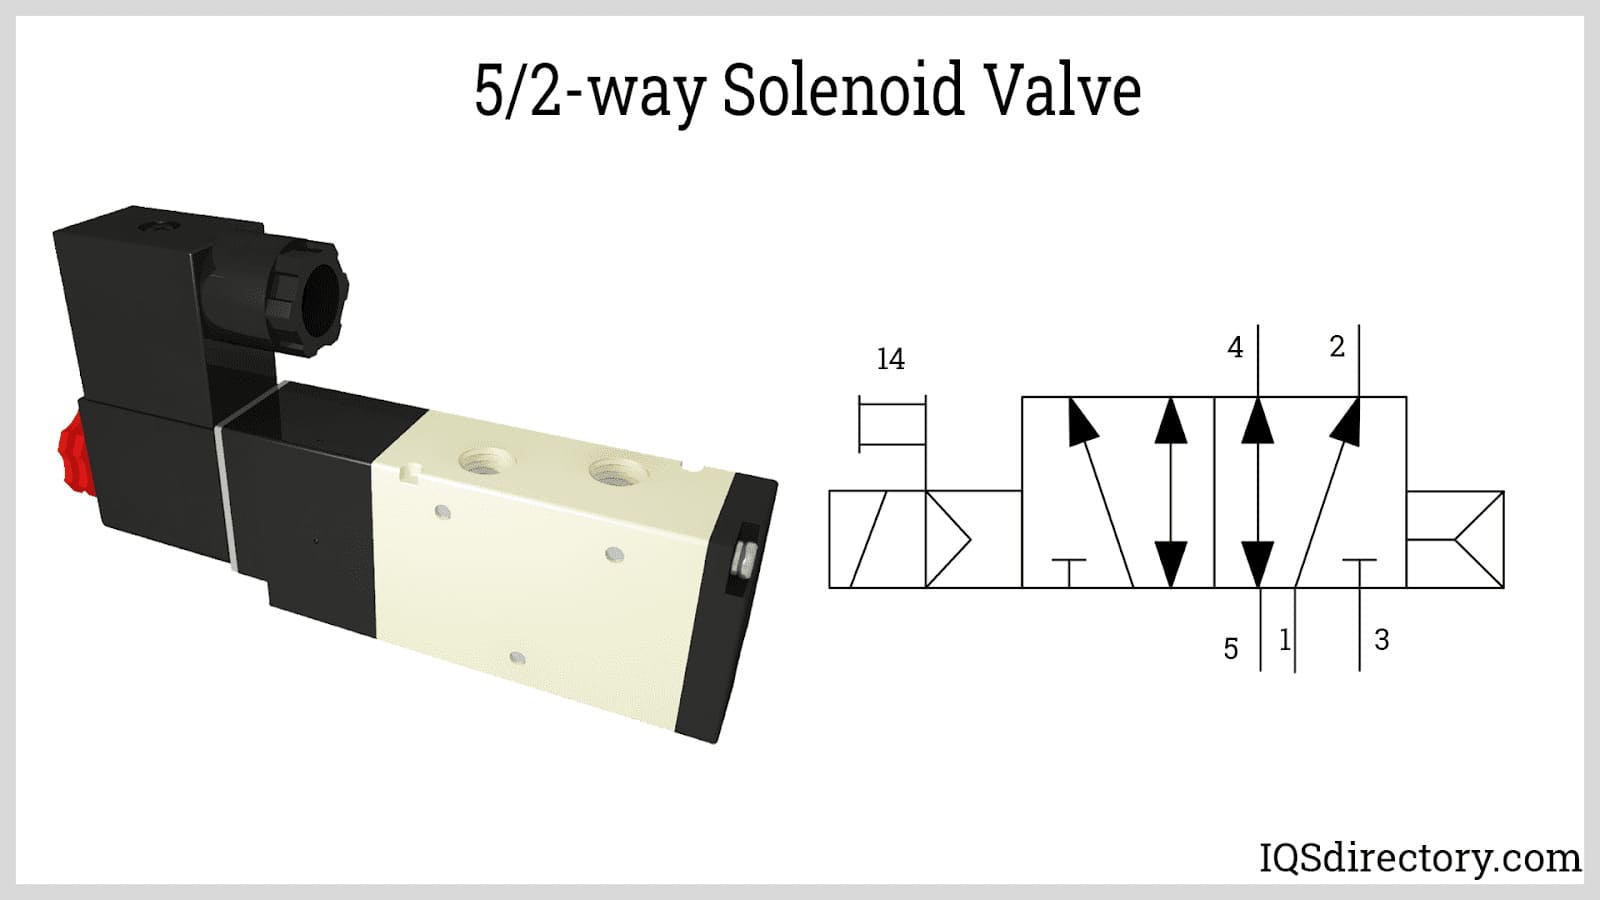 5/2-way Solenoid Valve